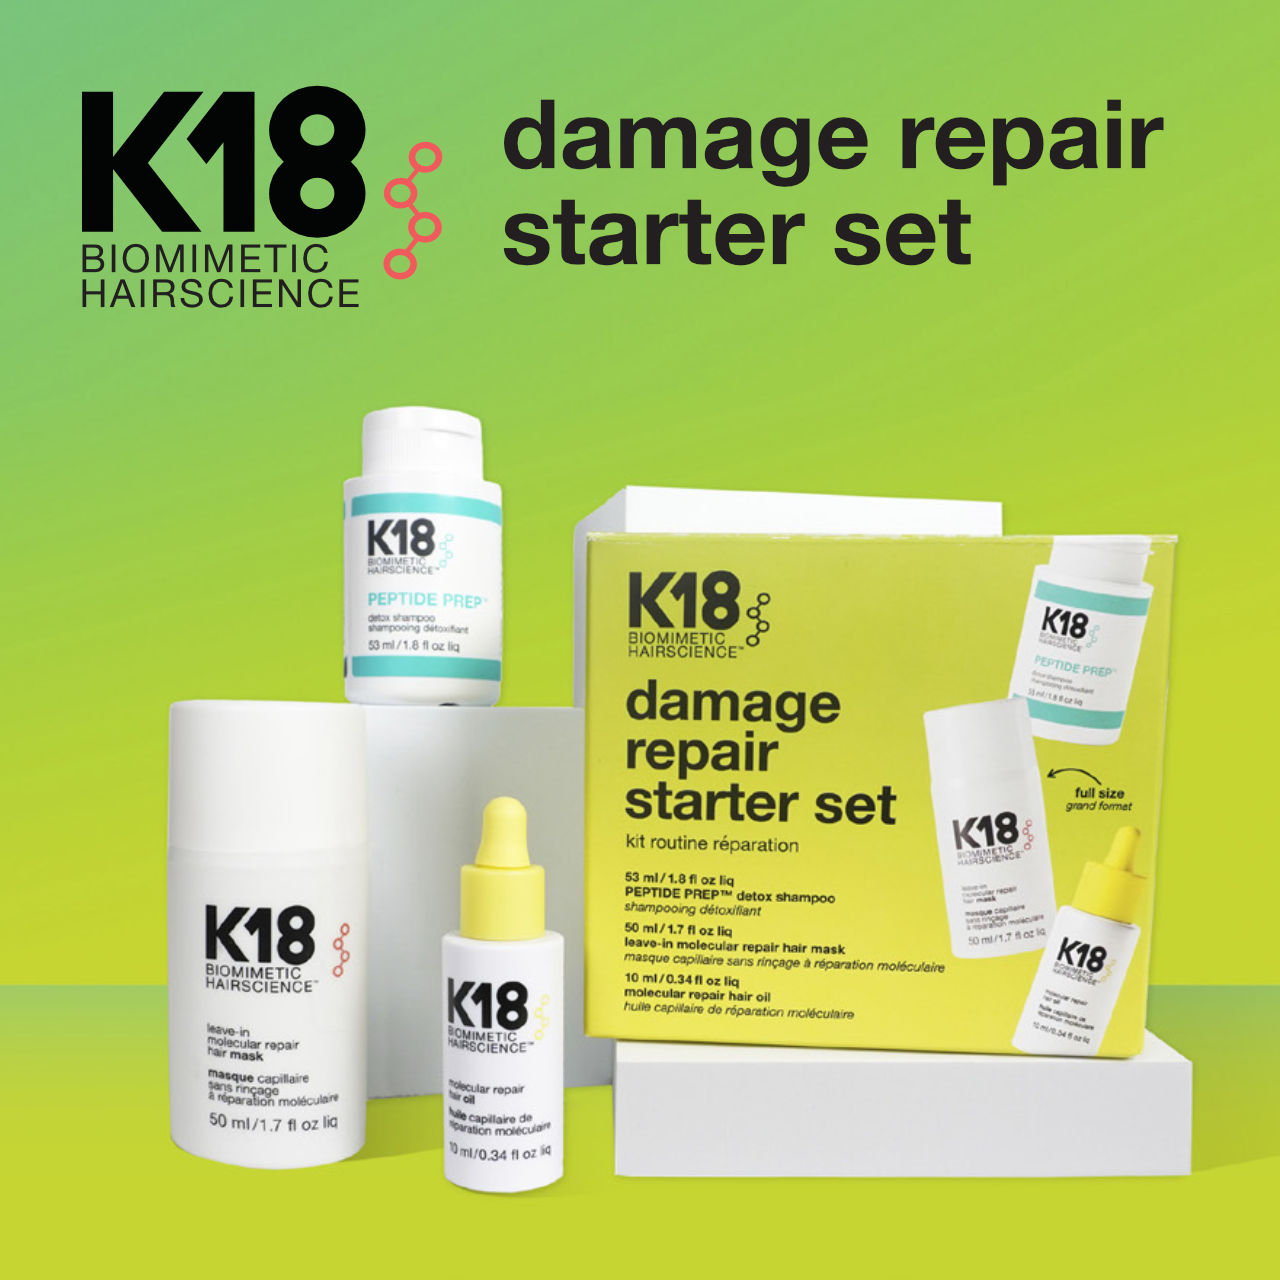 K18HAIR damage repair starter set